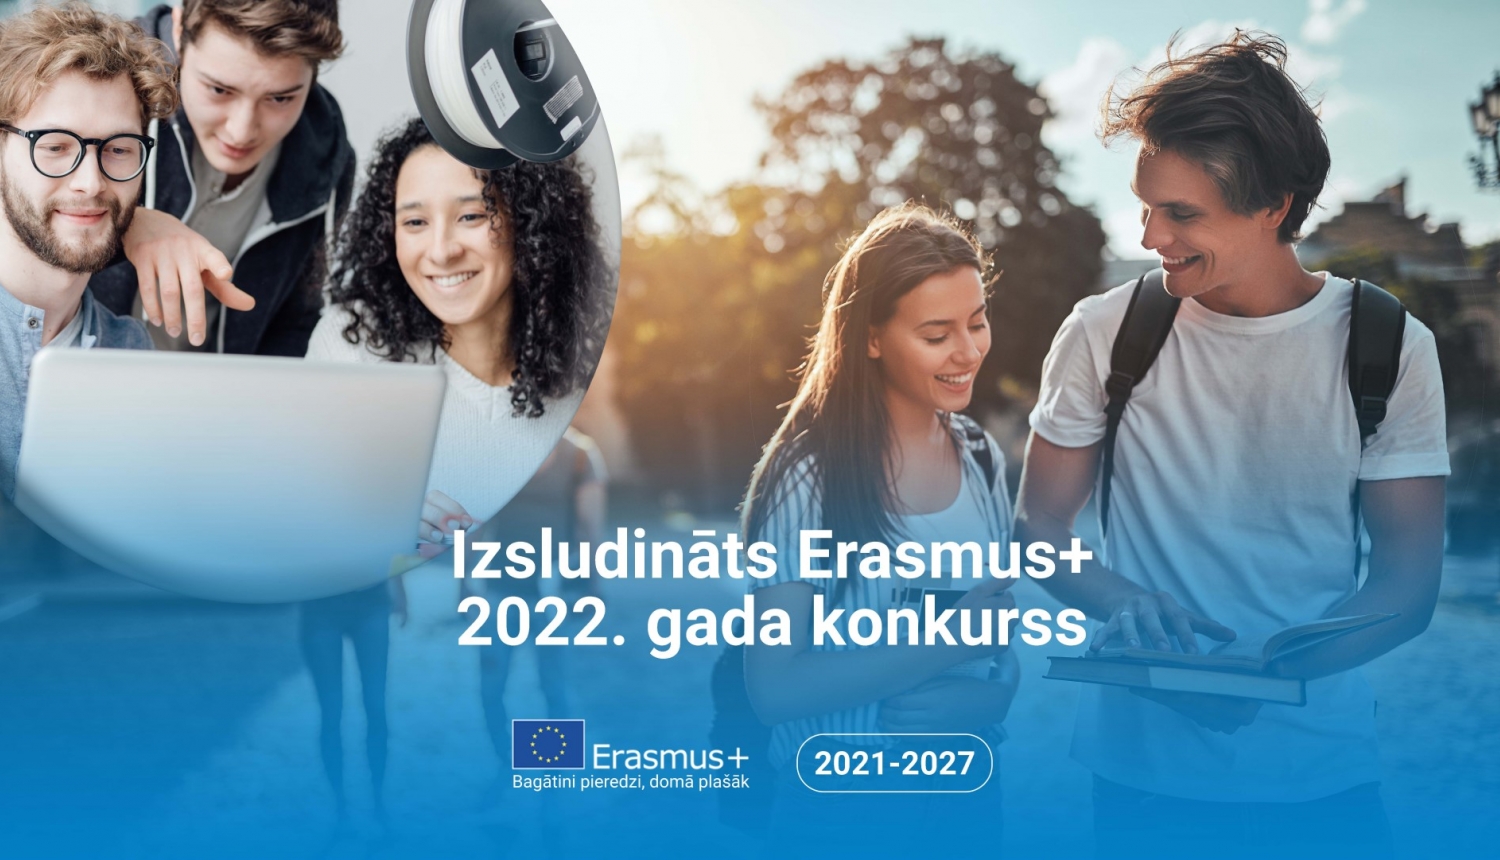 Erasmus+ konkurss 2022 izsludinats vizualis